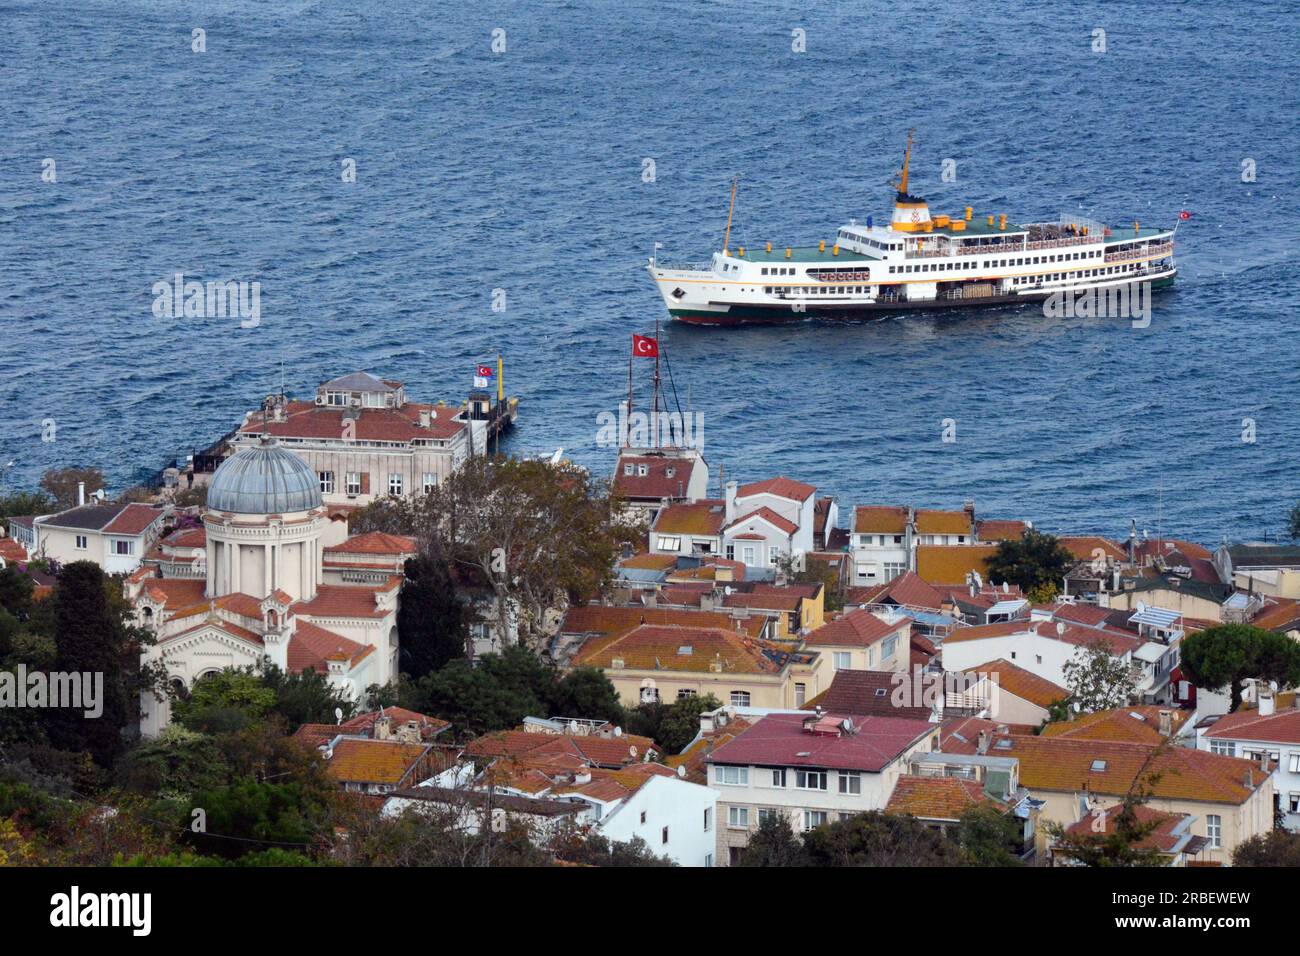 Le ferry d'Istanbul arrivant à l'île de Burgazada, dans la chaîne des îles des Princes (Adalar), dans la mer de Marmara, Turquie, Turkiye. Banque D'Images